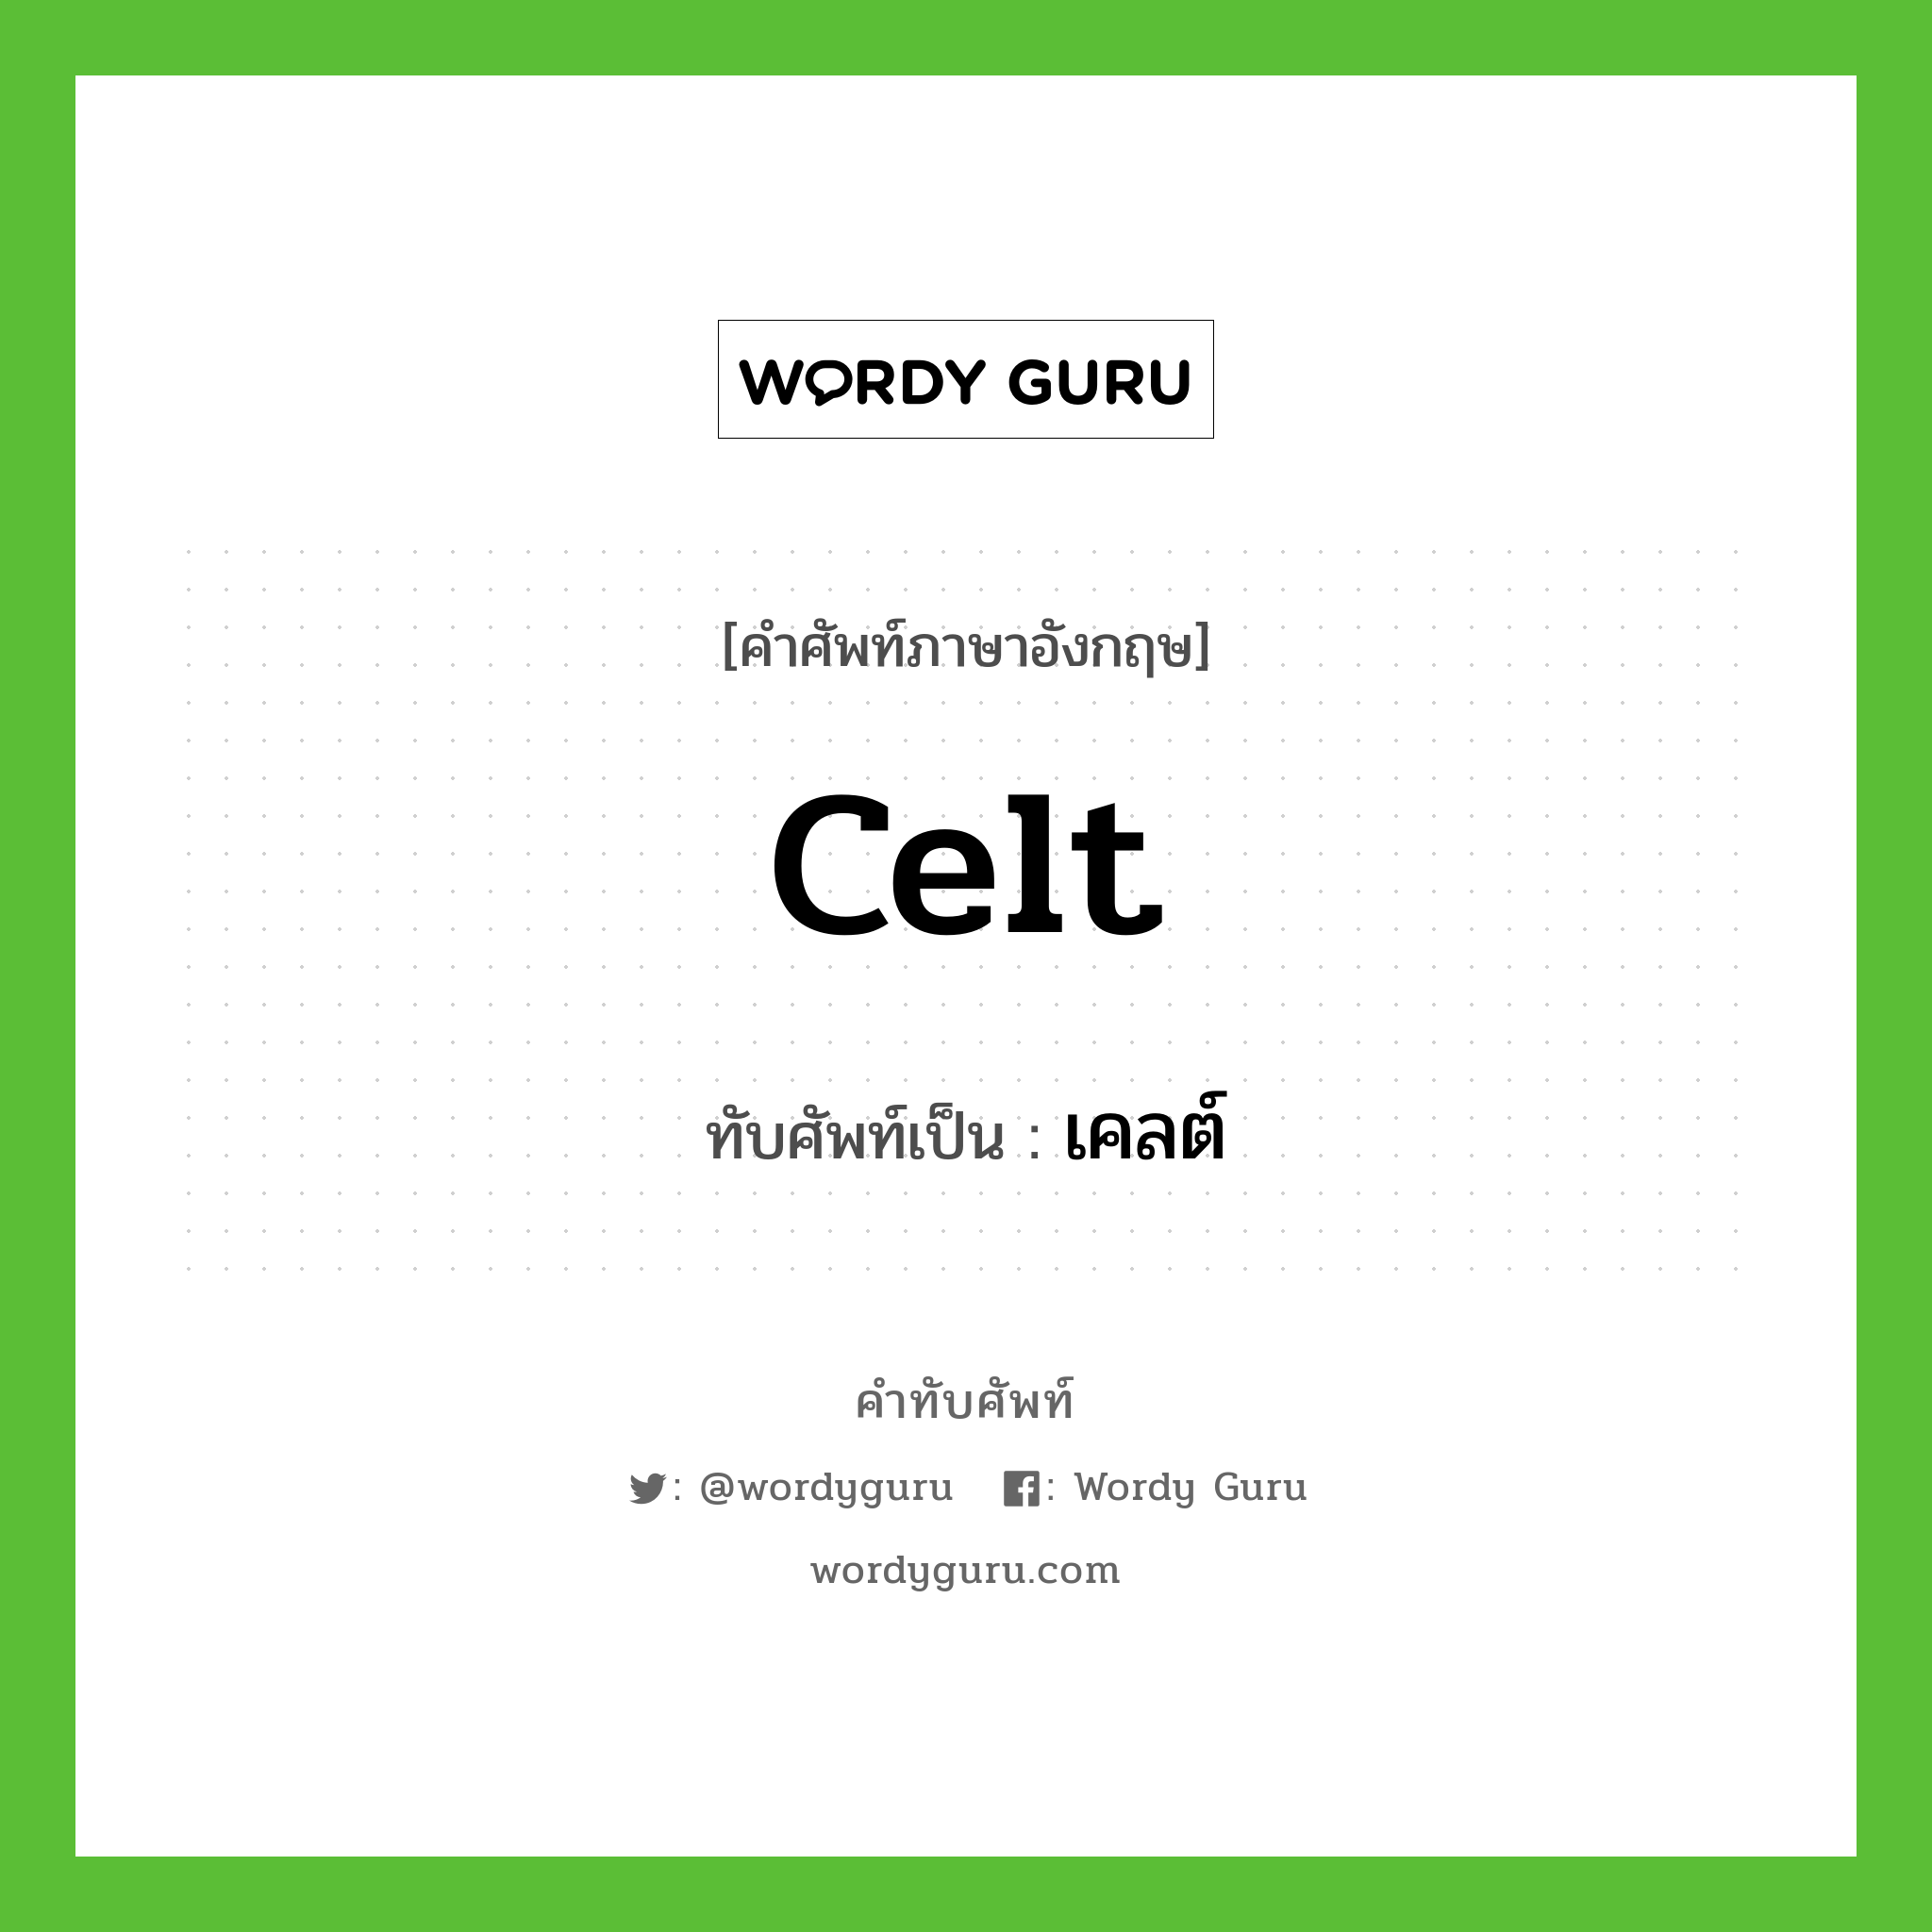 Celt เขียนเป็นคำไทยว่าอะไร?, คำศัพท์ภาษาอังกฤษ Celt ทับศัพท์เป็น เคลต์